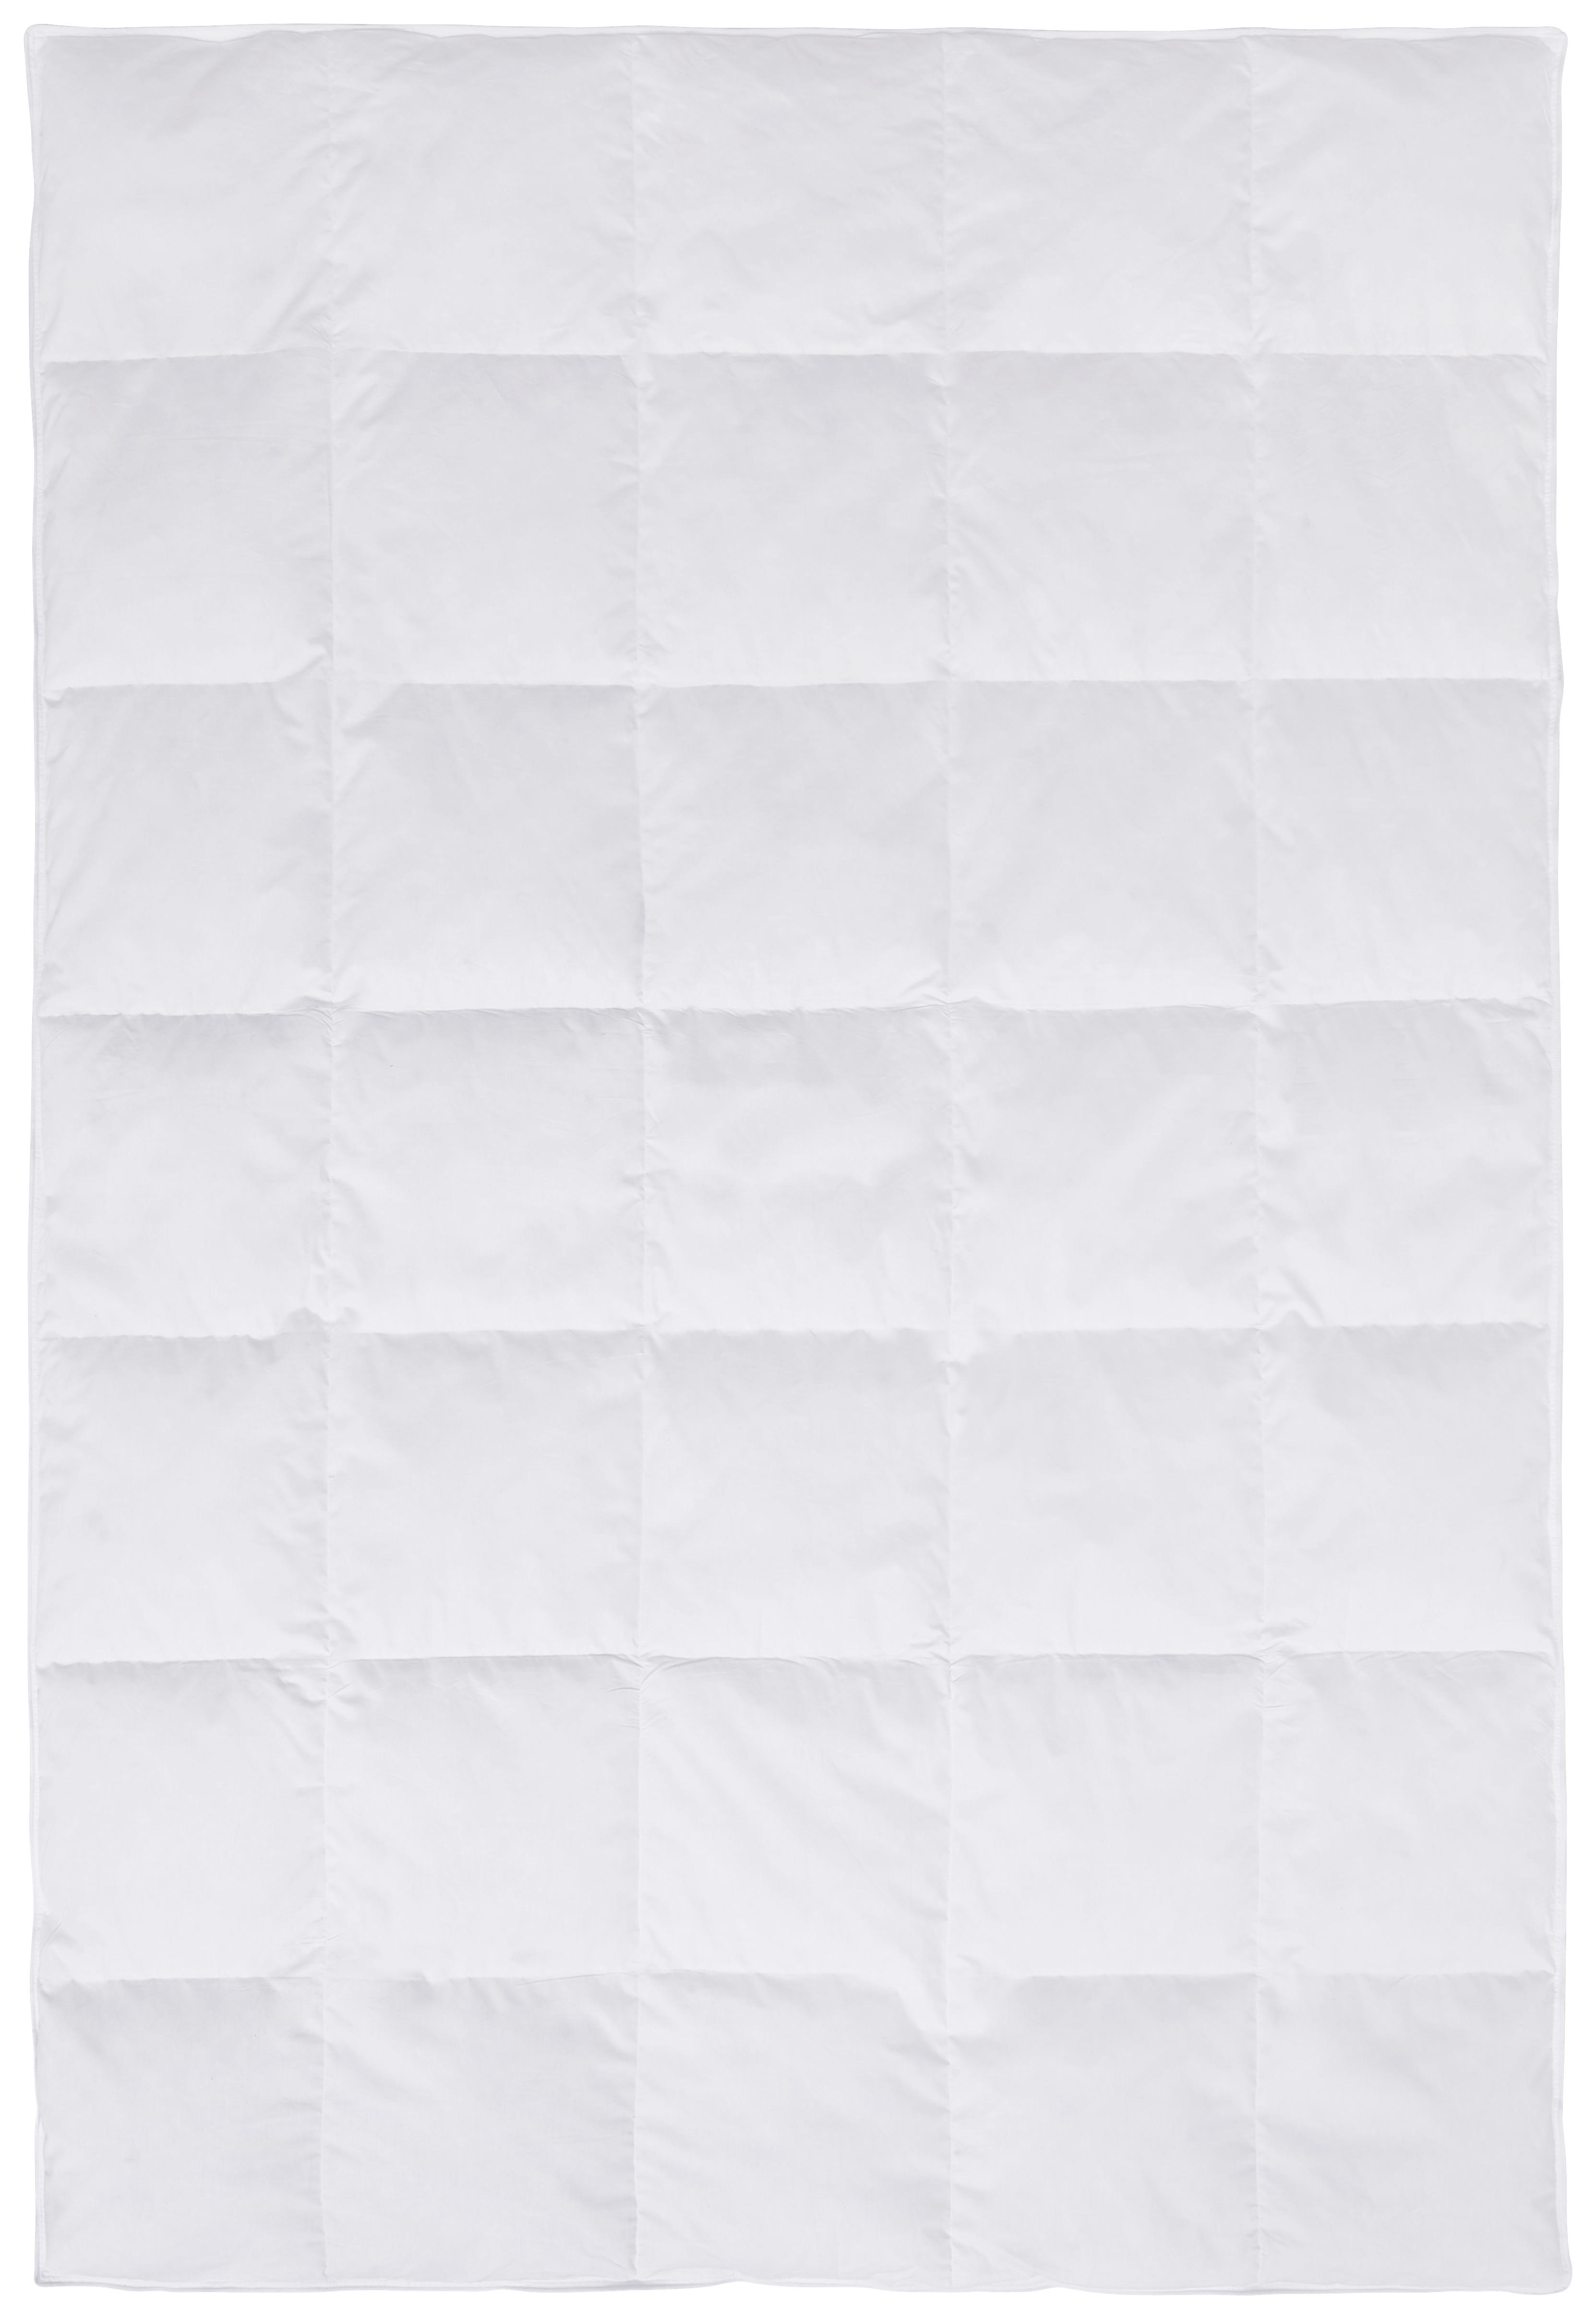 CELOROČNÁ PRIKRÝVKA, 135/200 cm, perie, páperie - biela, Basics, textil (135/200cm) - Boxxx